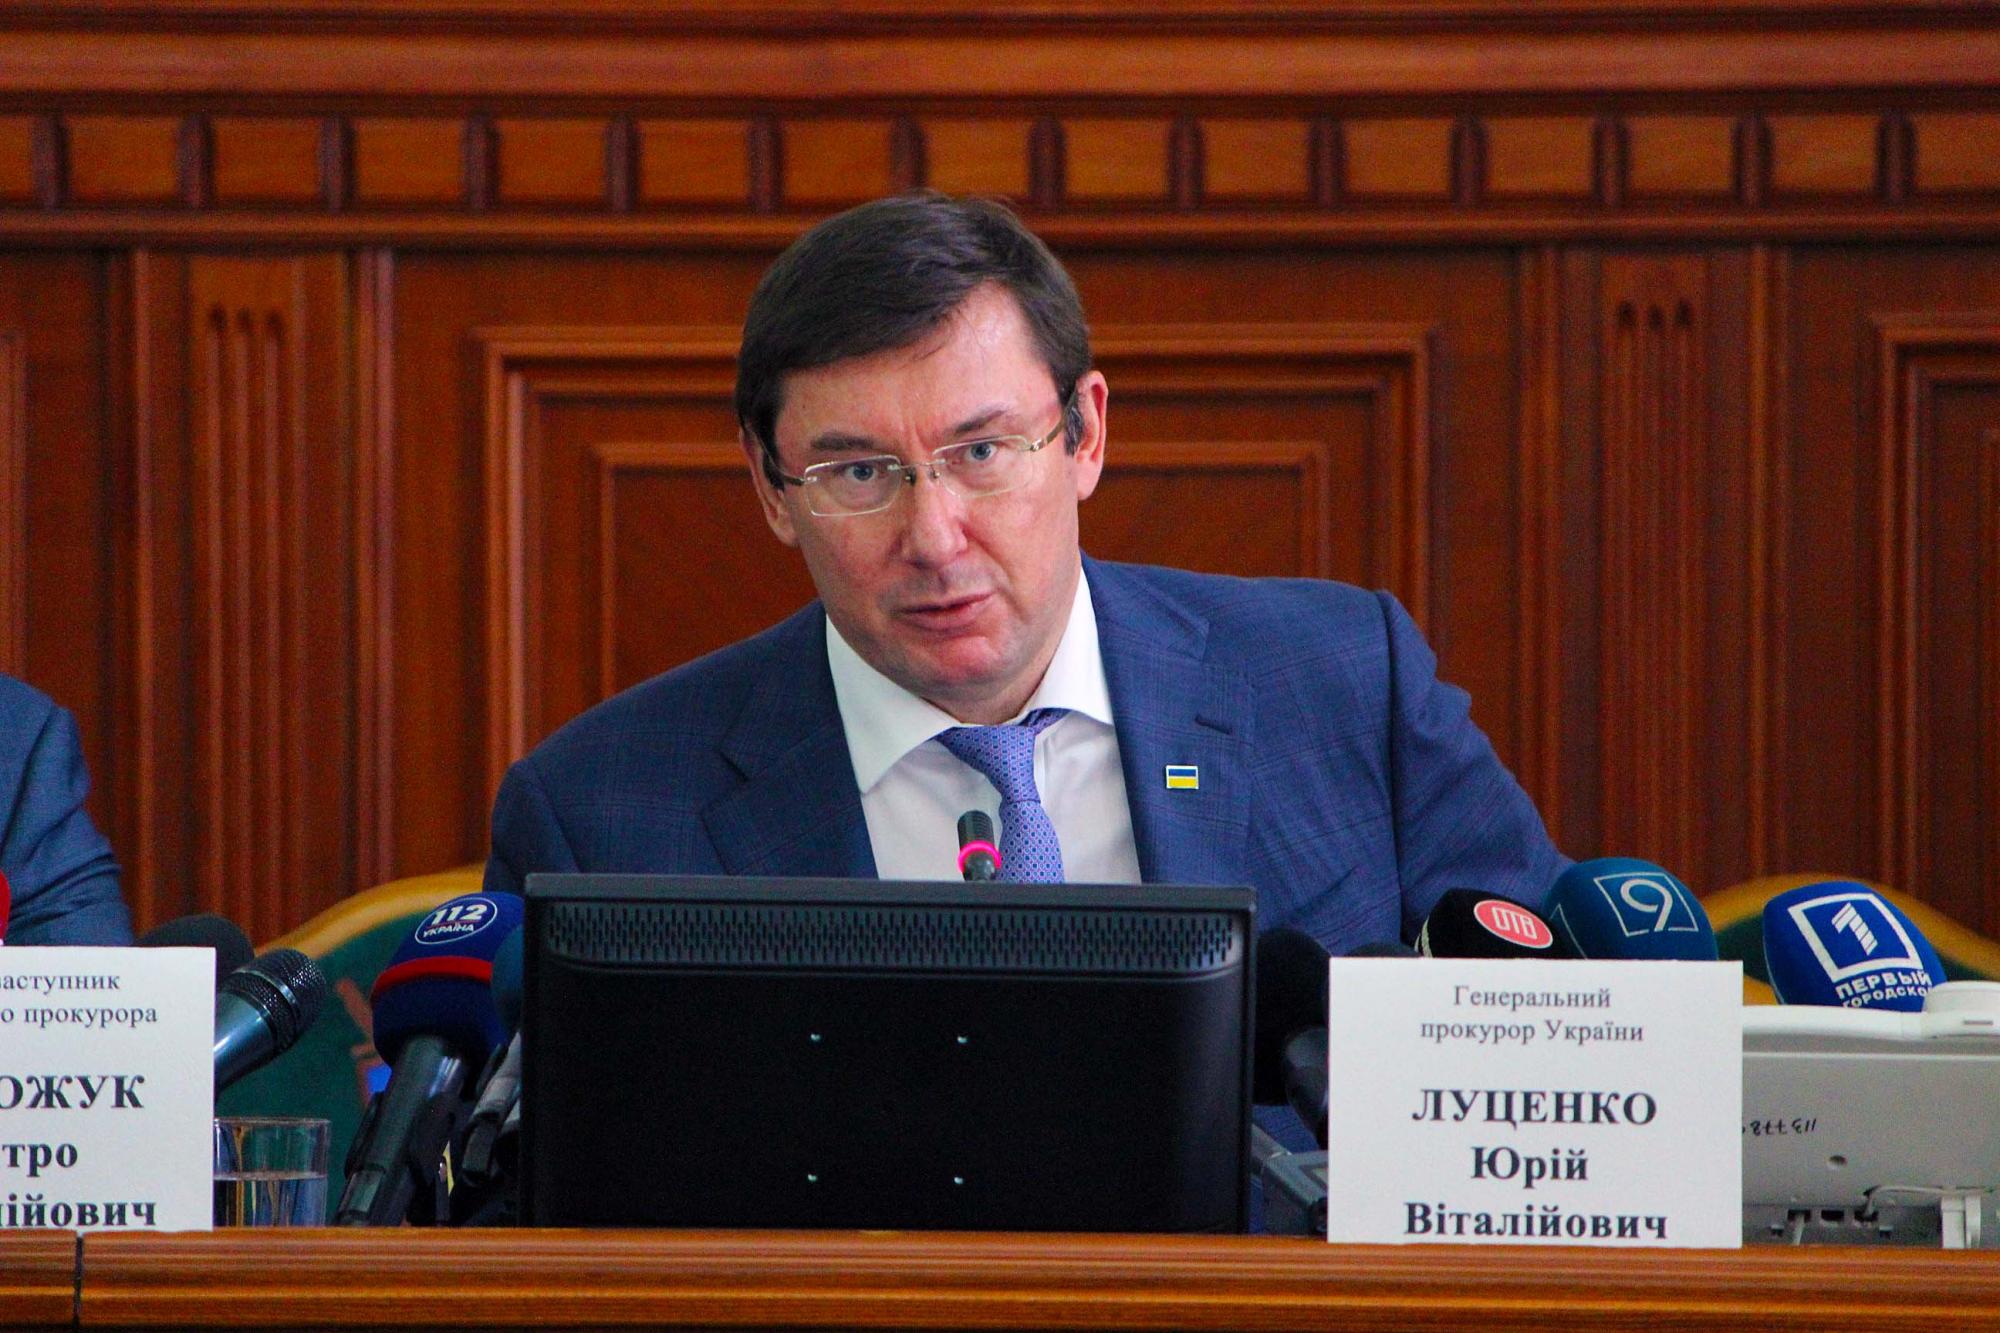 Юрий Луценко сообщает, что как только начнёт работу новый парламент, так сразу он напишет заявление об отставке